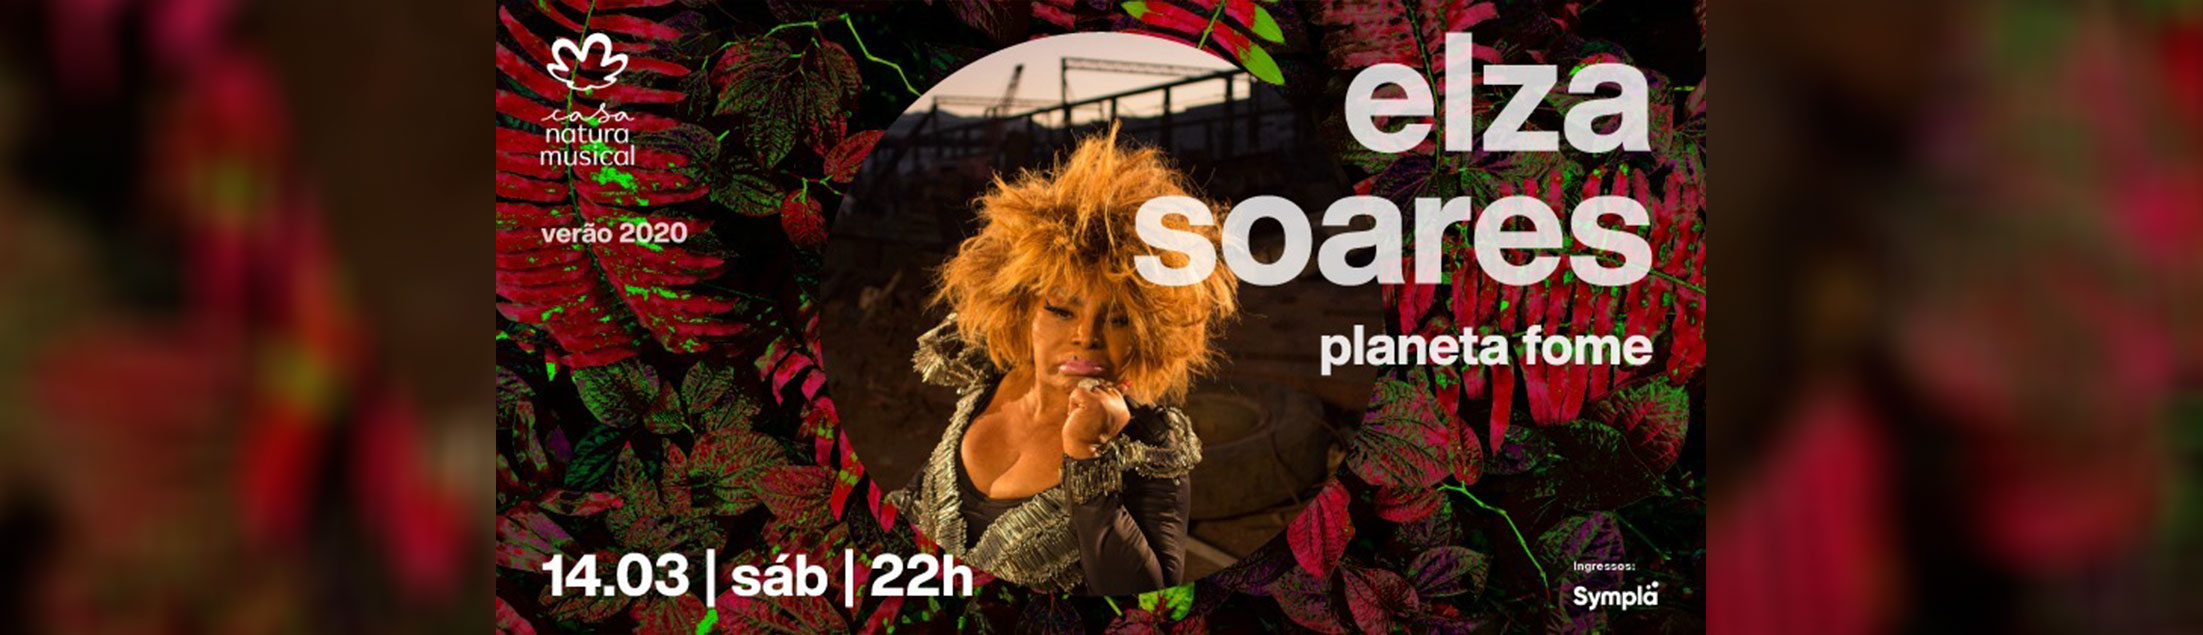 Elza Soares apresenta o disco 'Planeta Fome' na Casa Natura Musical